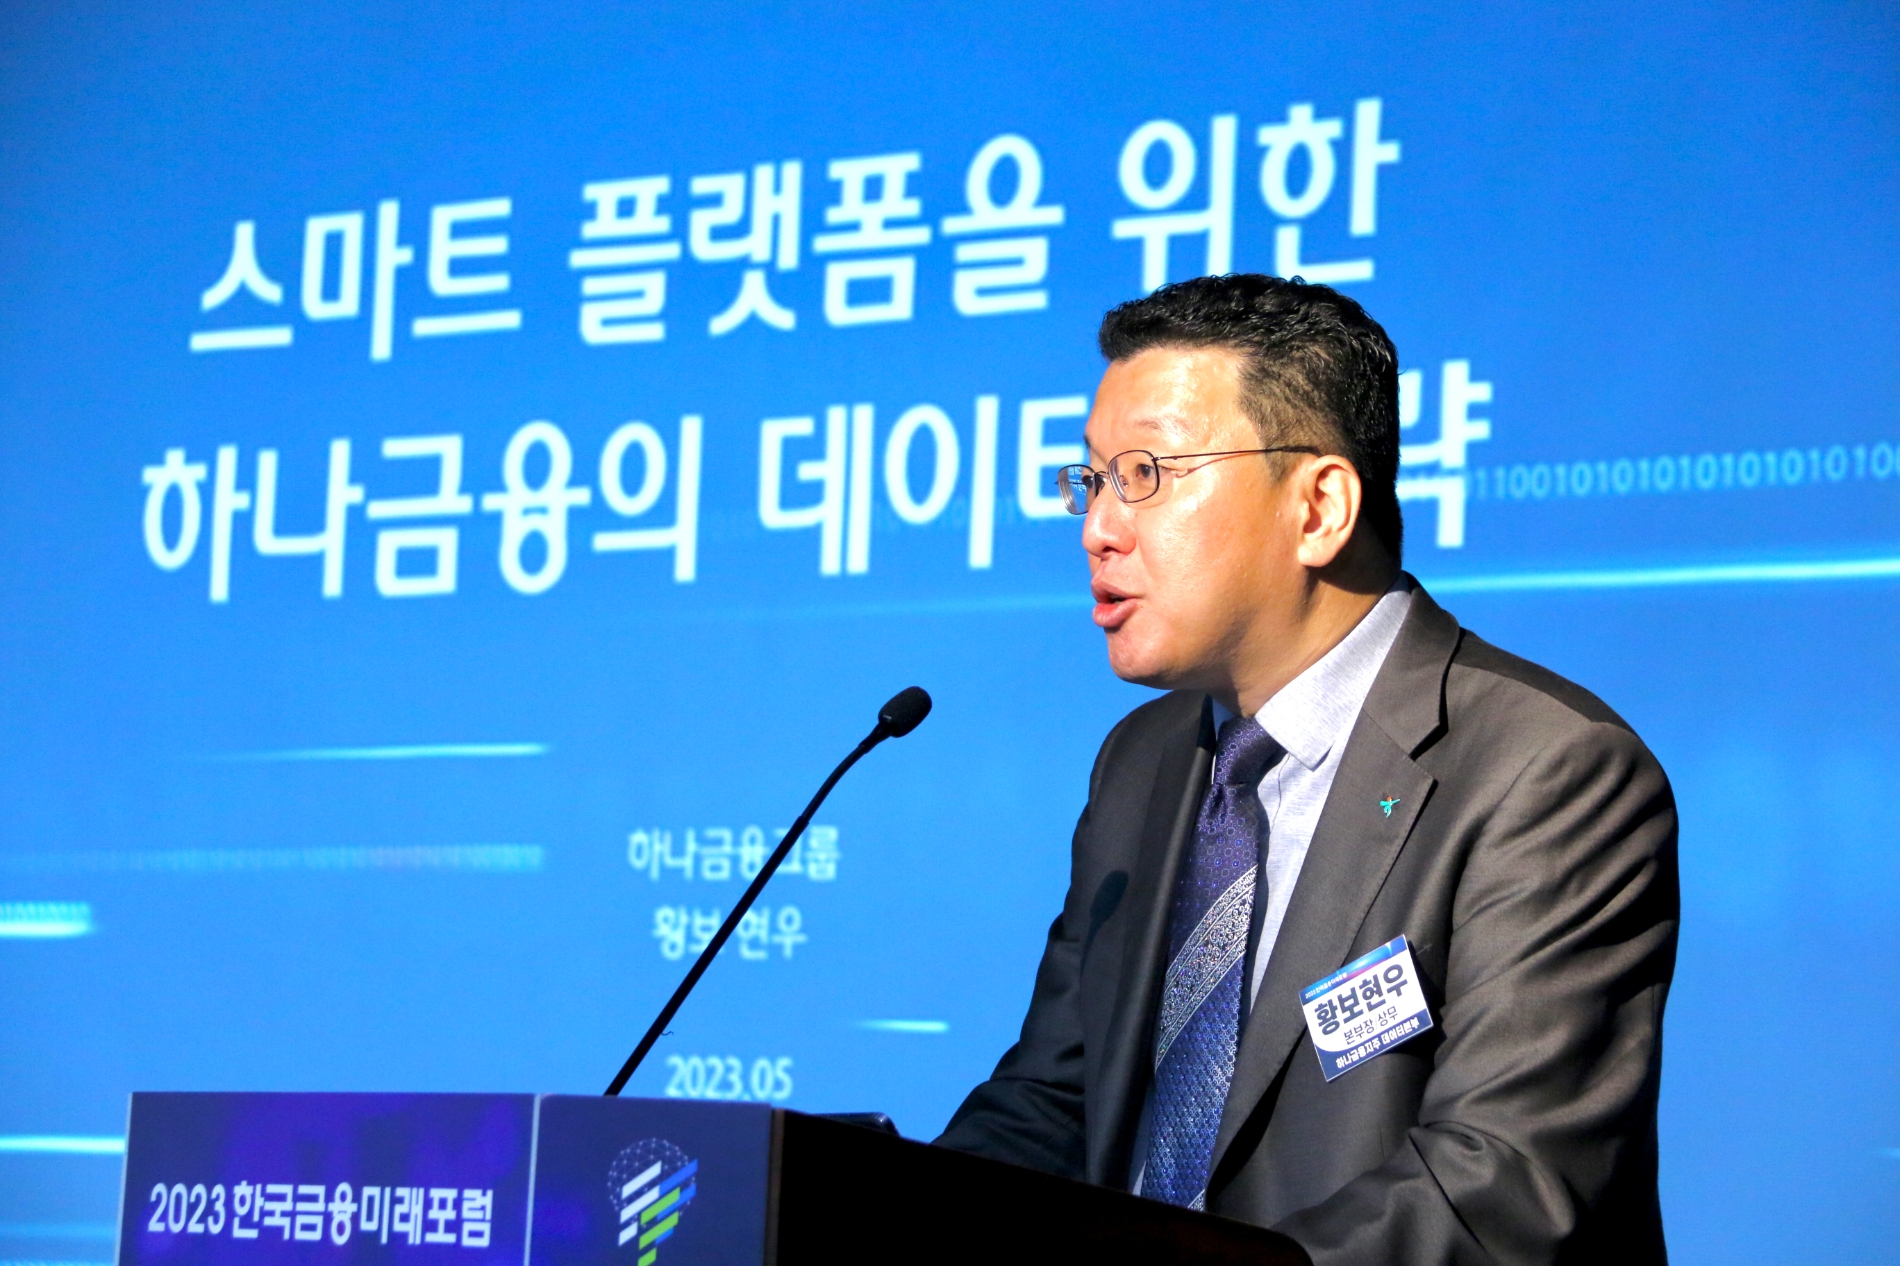 황보현우 하나금융지주 데이터본부장이 23일 오후 서울 중구 은행연합회에서 열린 ‘2023 한국금융미래포럼 : 금융대전환, 새도약 길을 찾다’에서 ‘스마트 플랫폼을 위한 하나금융의 데이터전략’이라는 주제로 발표하고 있다.